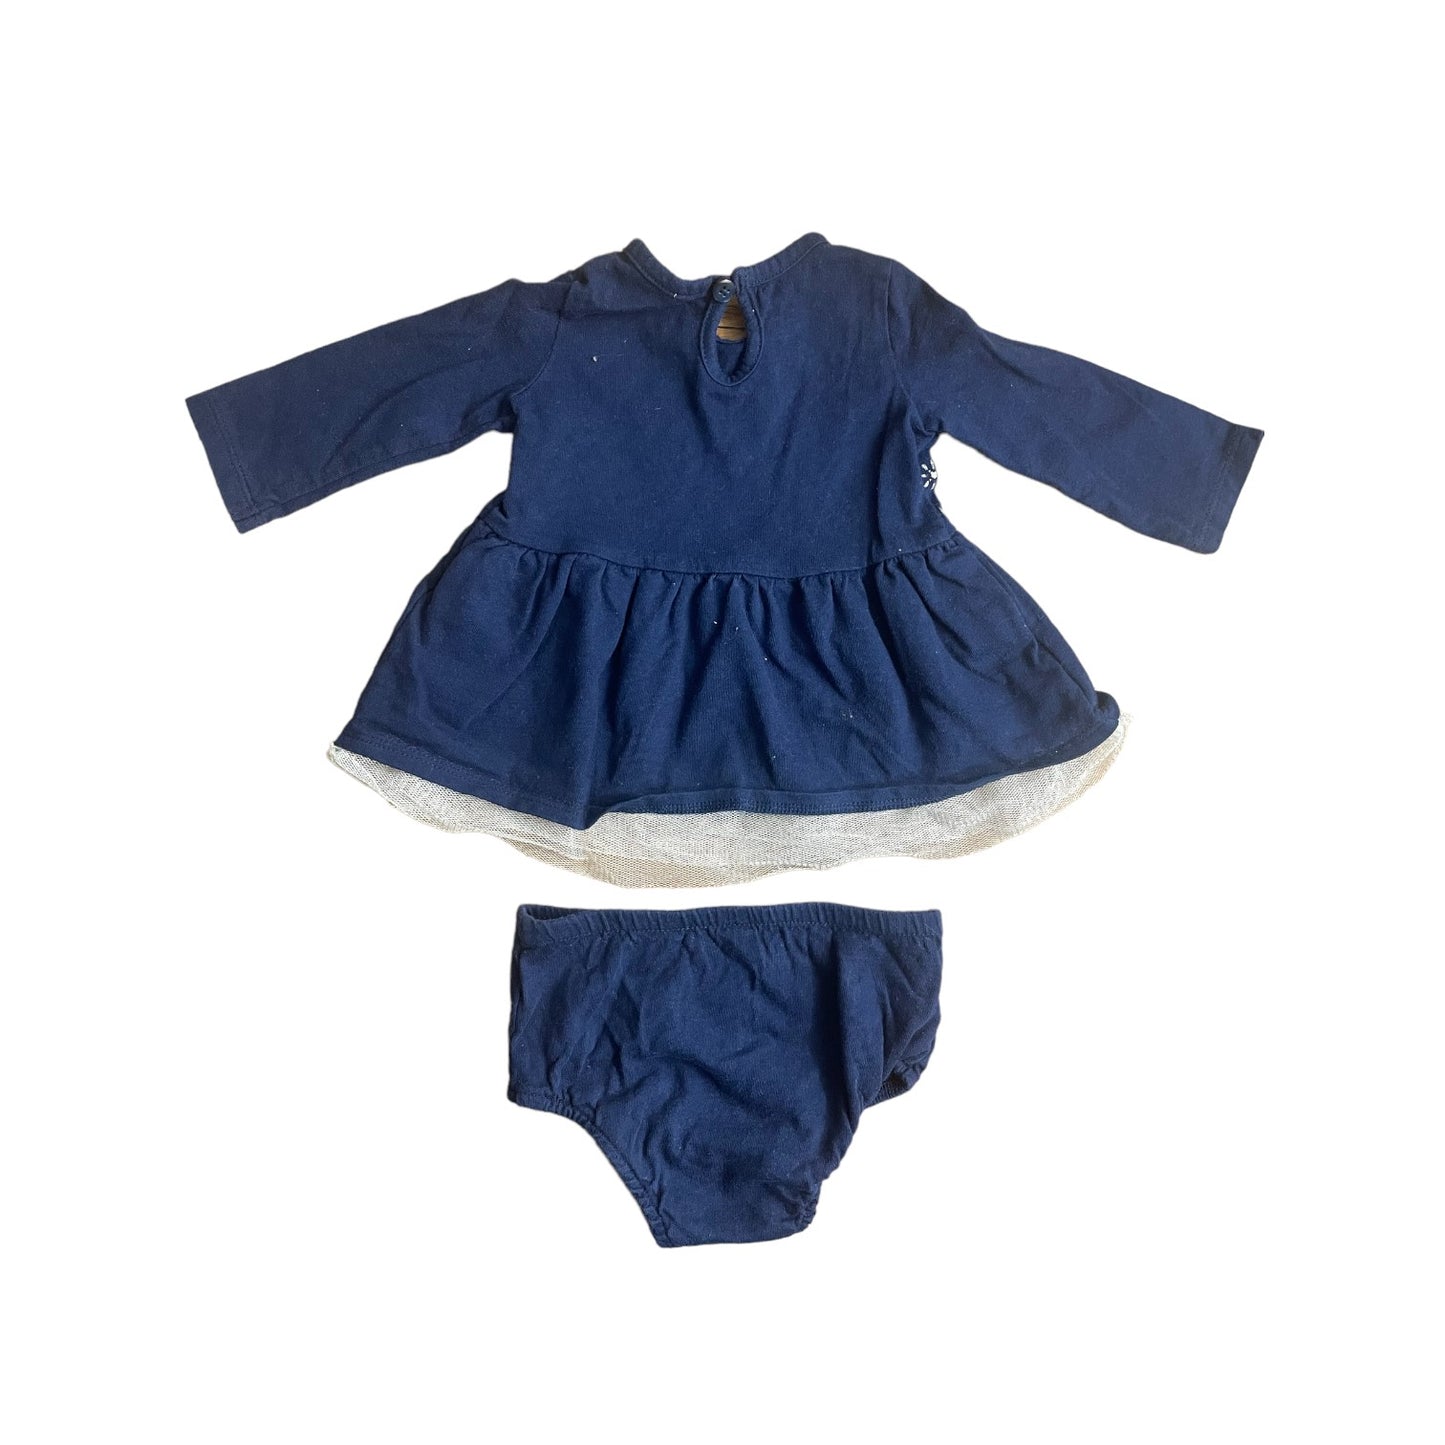 Cherokee Infant Girls Dress 0-3 months